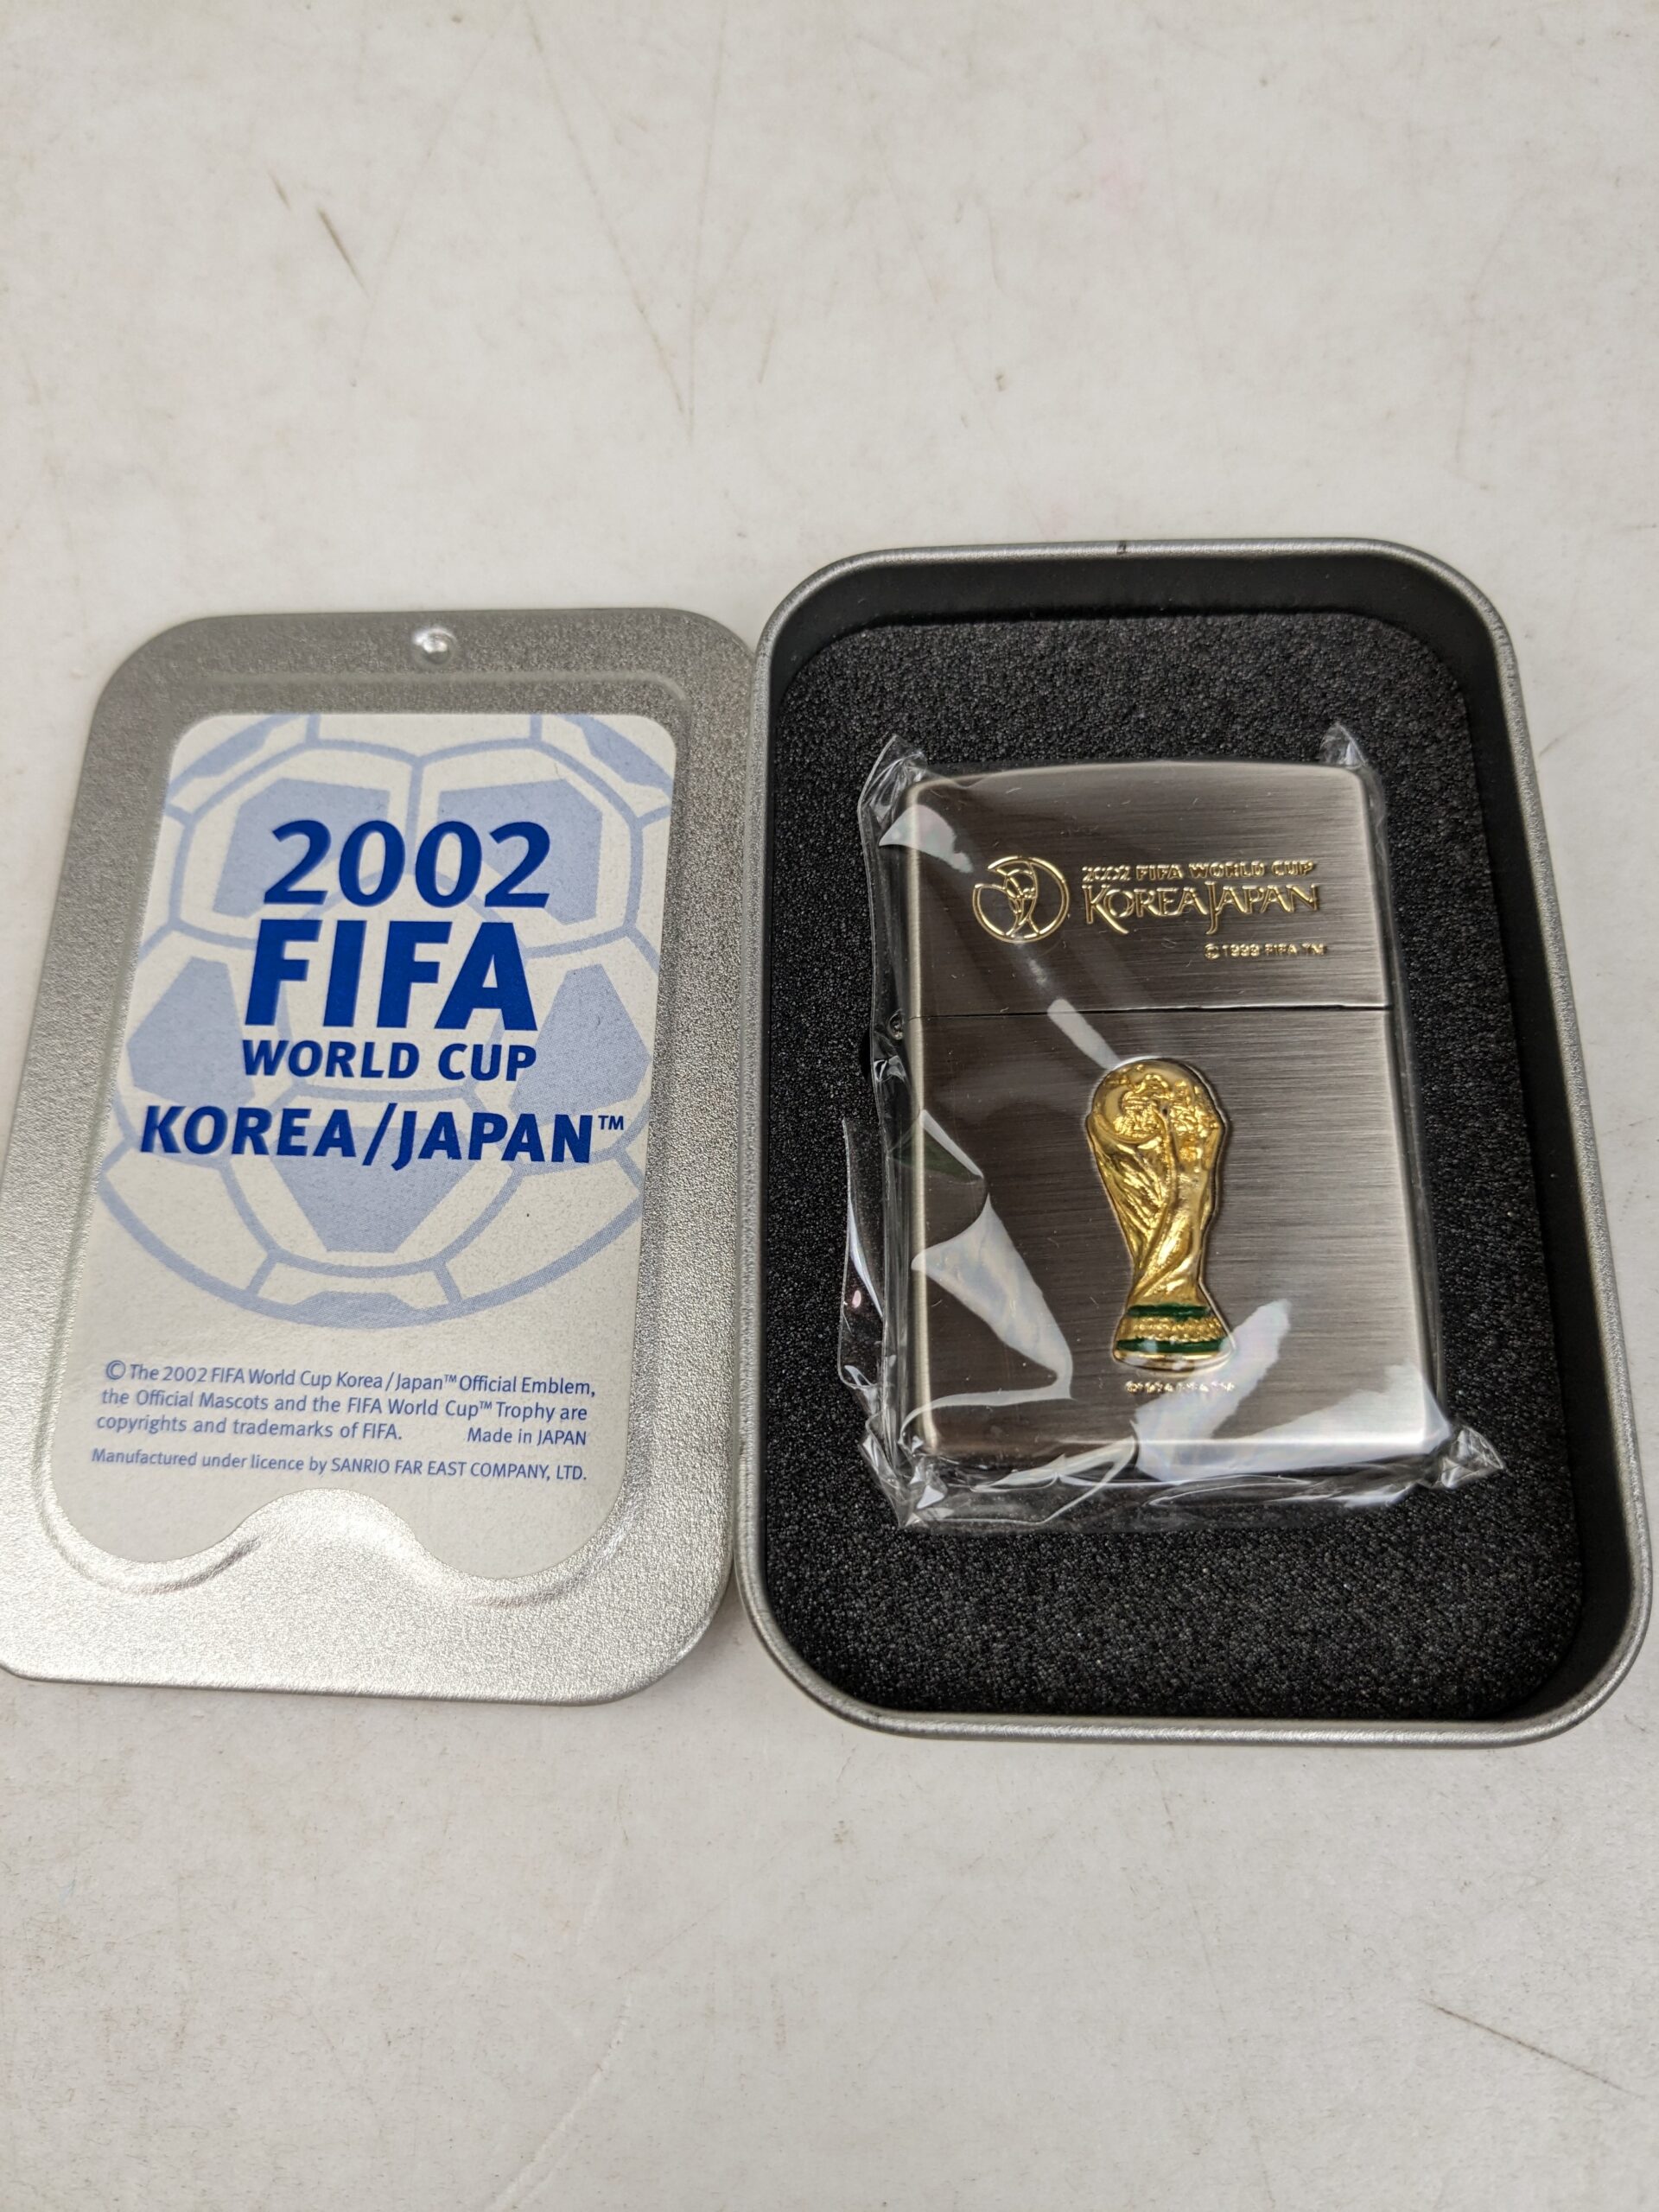 Zippo ジッポ オイルライター 日韓ワールドカップ 2002 FIFA WORLD CUP